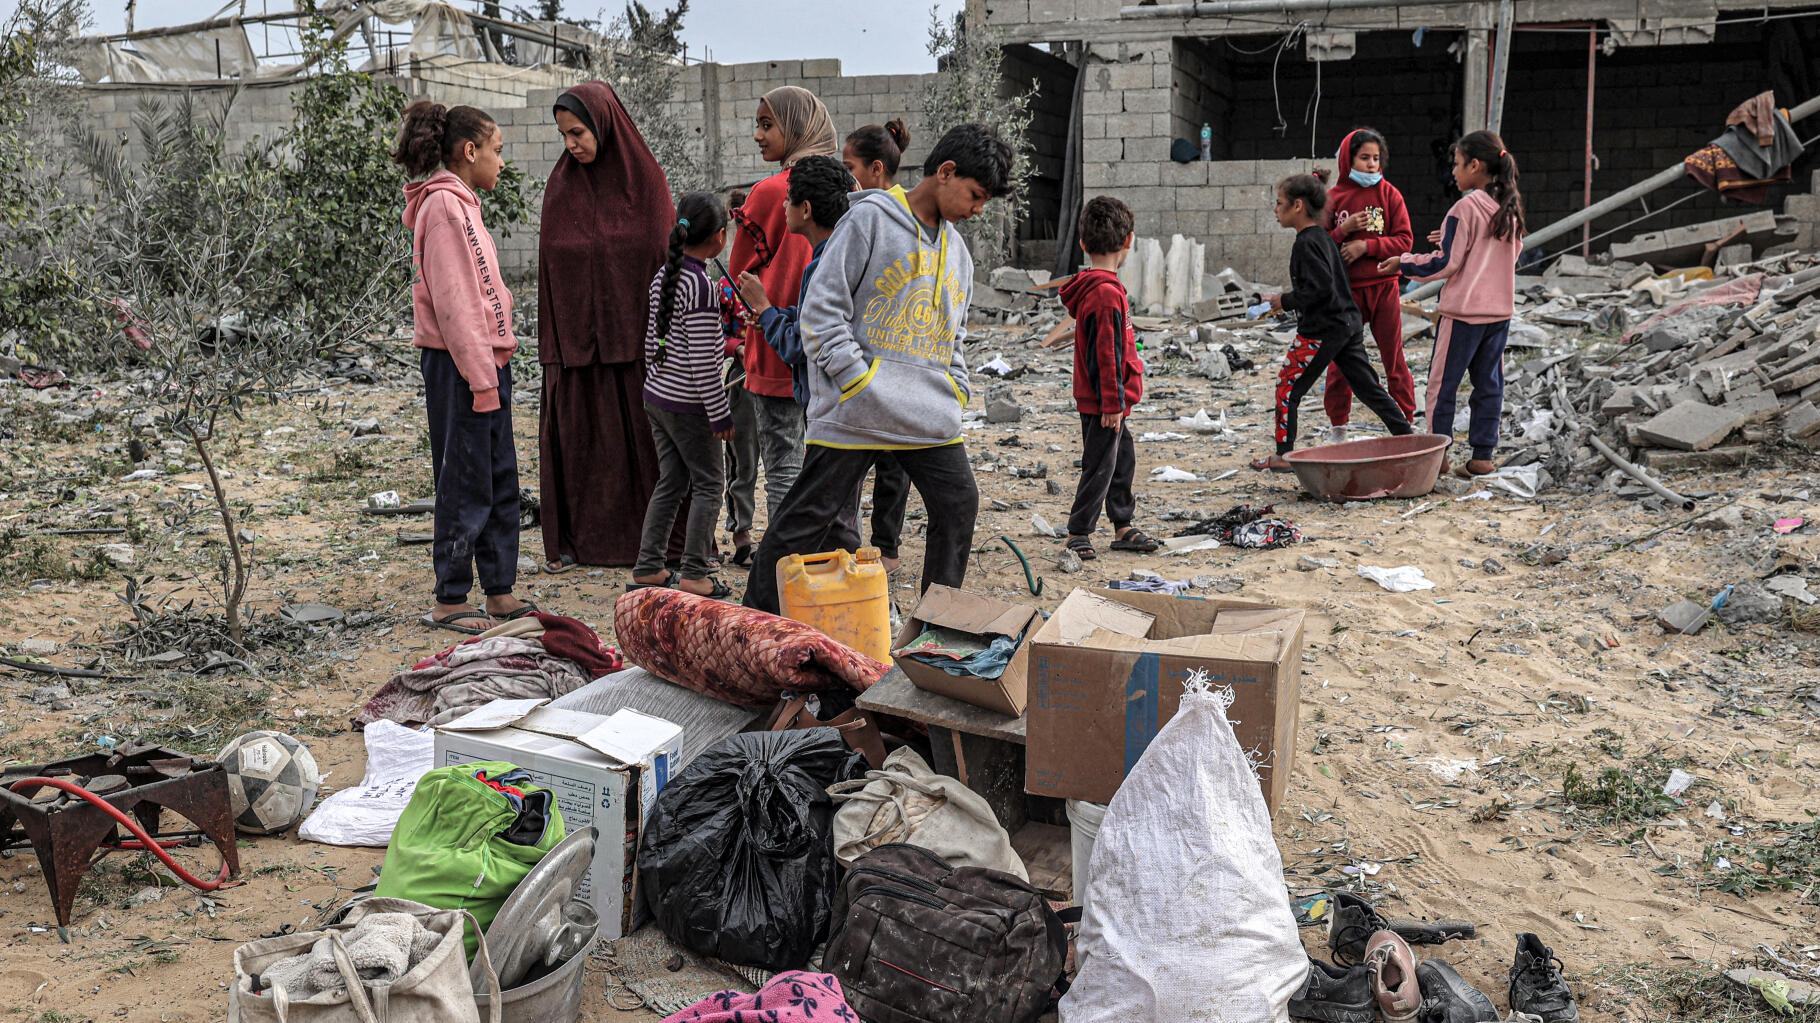 A Gaza, la disperazione provata da alcuni giovani è riassunta in questa citazione dell’UNICEF